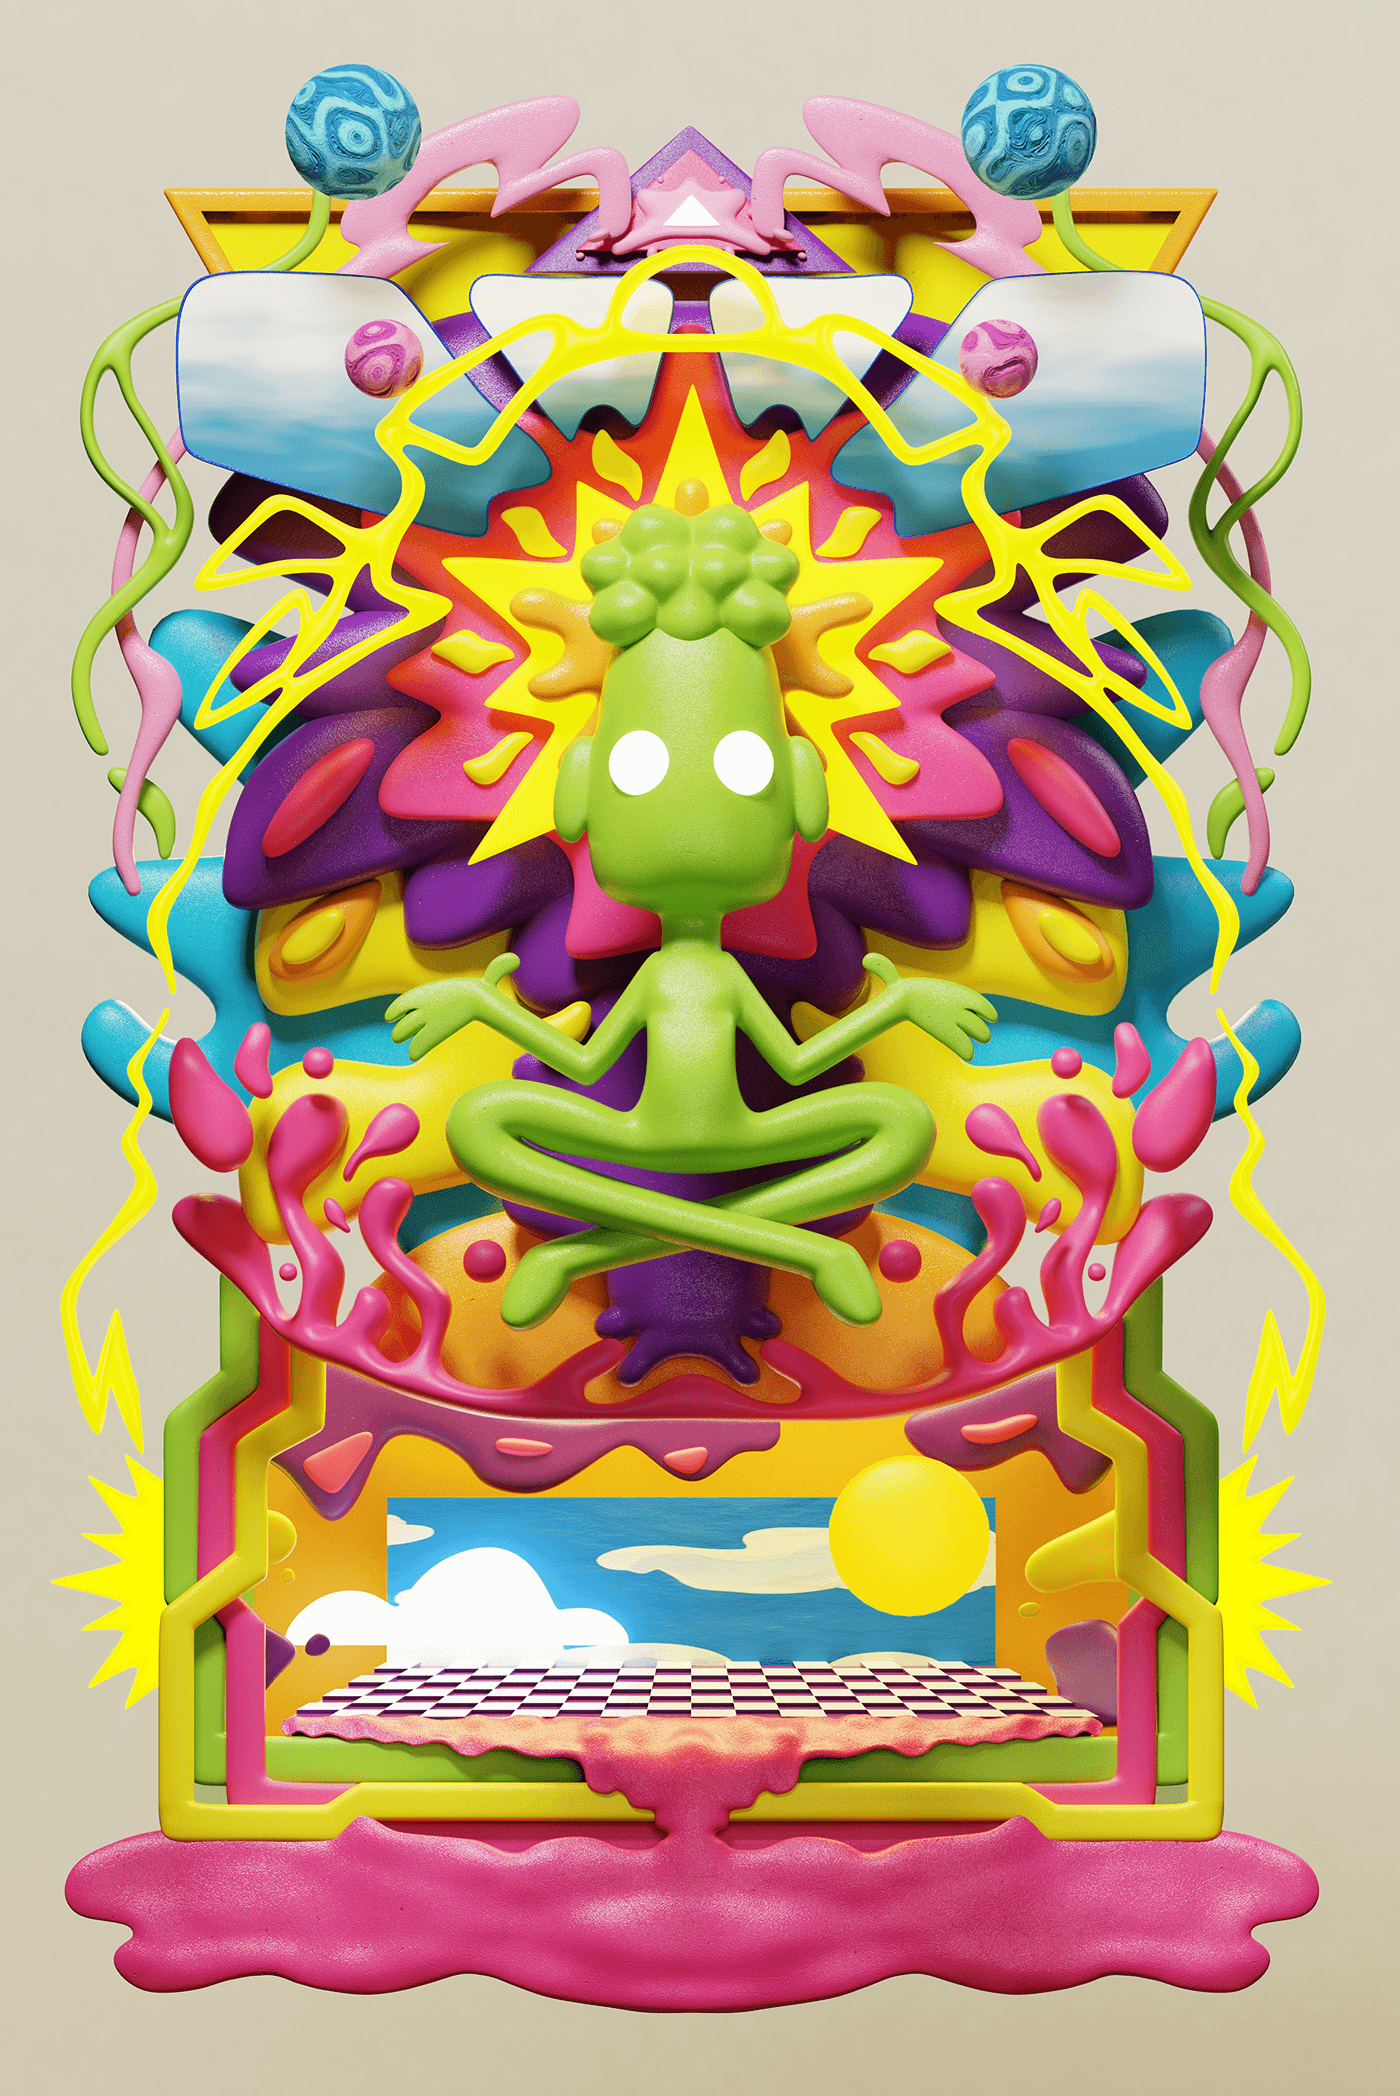 3D blender Digital Art  ILLUSTRATION  poster Character design  cartoon composition psychedelic 2д